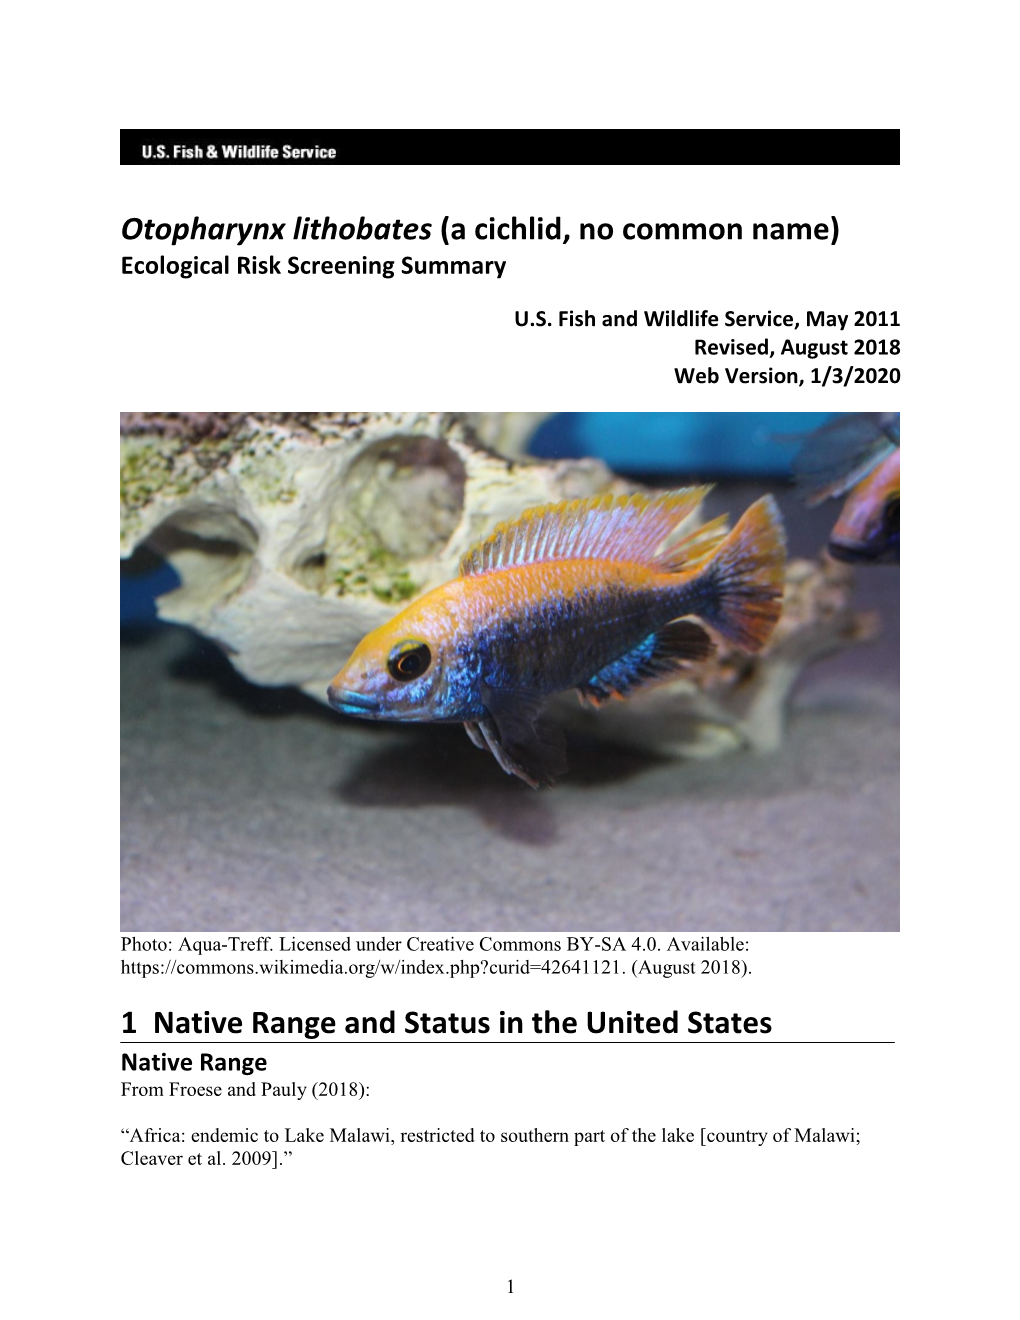 Otopharynx Lithobates Ecological Risk Screening Summary